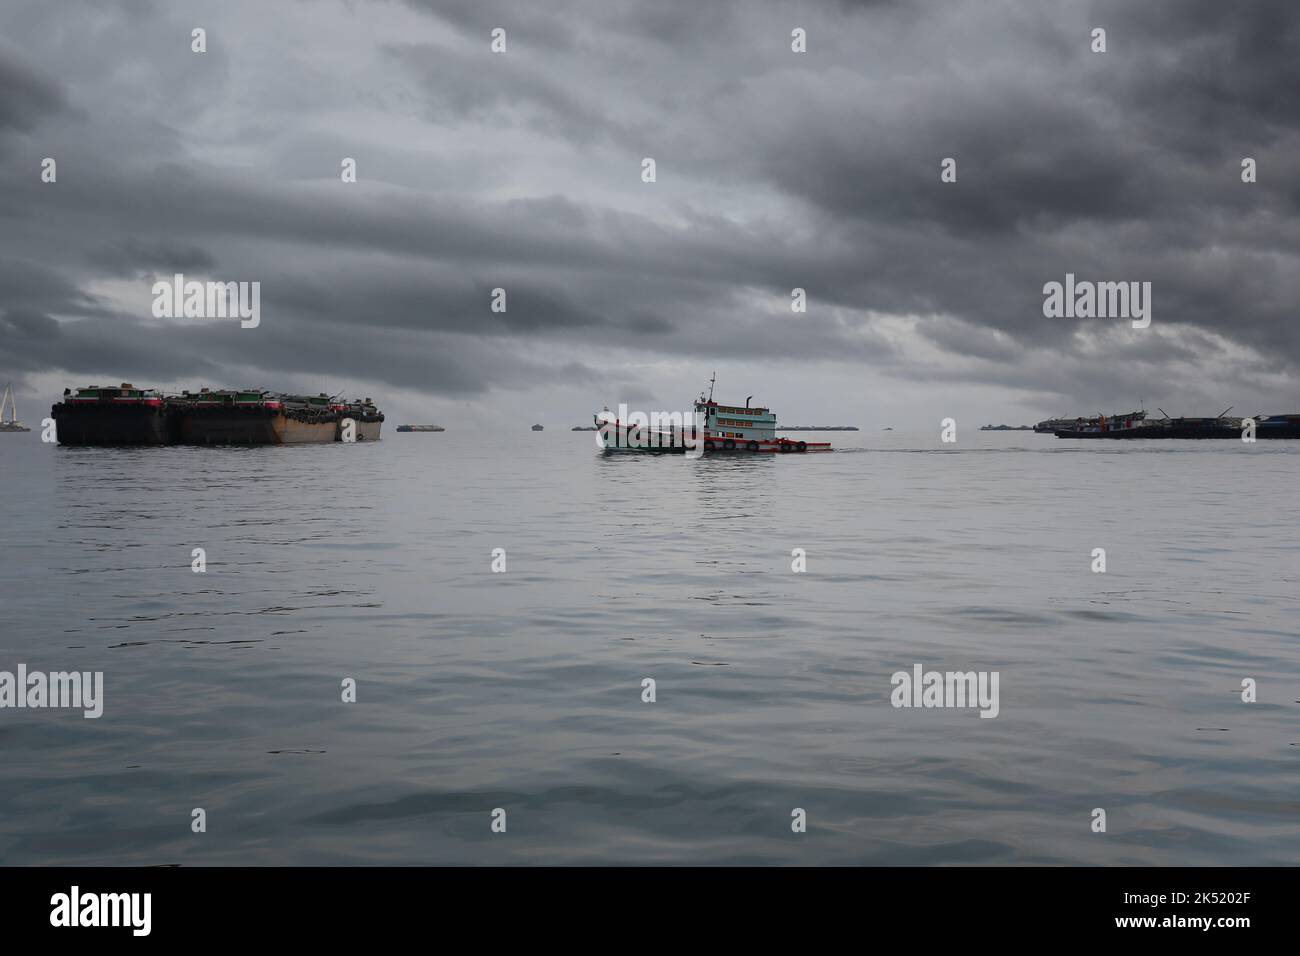 Barche da rimorchiatore e navi da carico ormeggiate nella baia di Koh Sichang, provincia di Chonburi in Thailandia, il cielo coperto e la pioggia in arrivo. Foto Stock